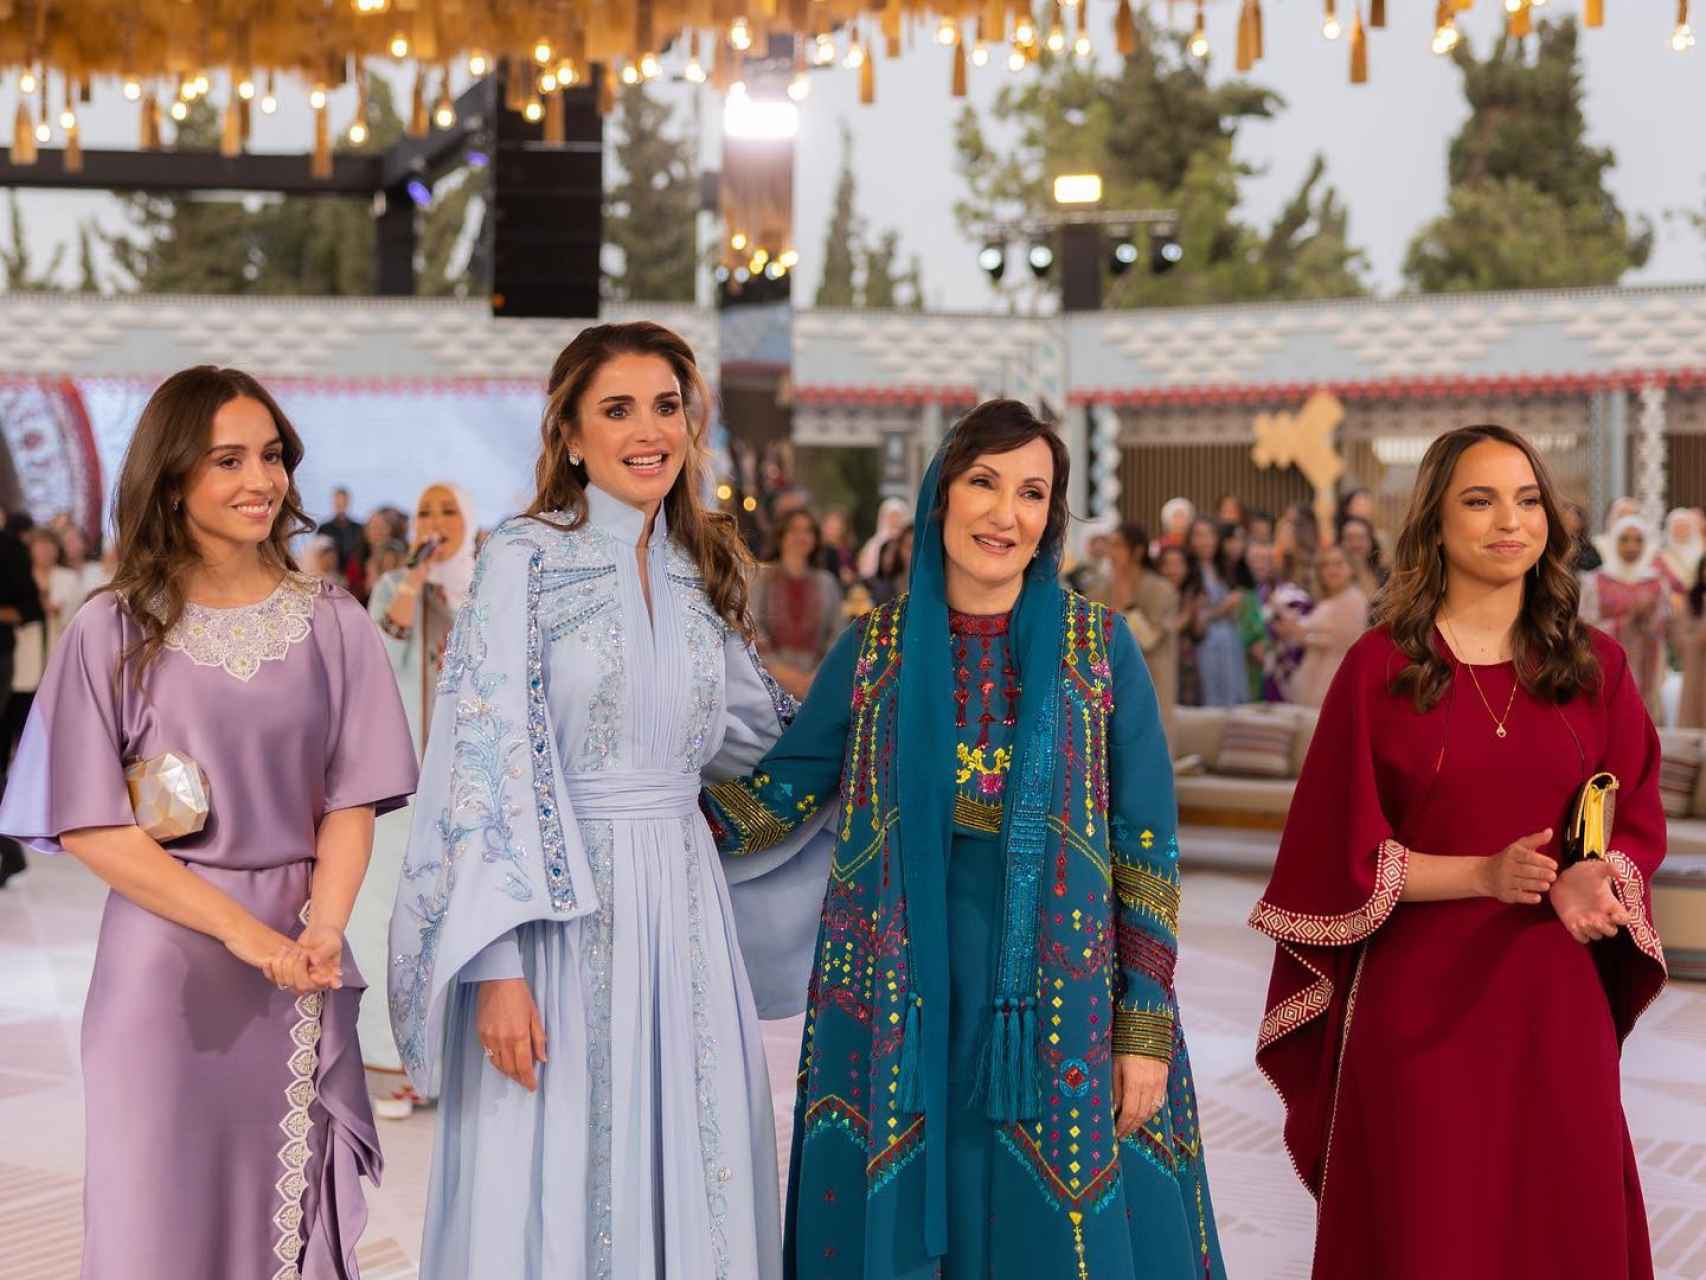 La Reina y las princesas en la fiesta de la henna de Radjwa Al Saif.